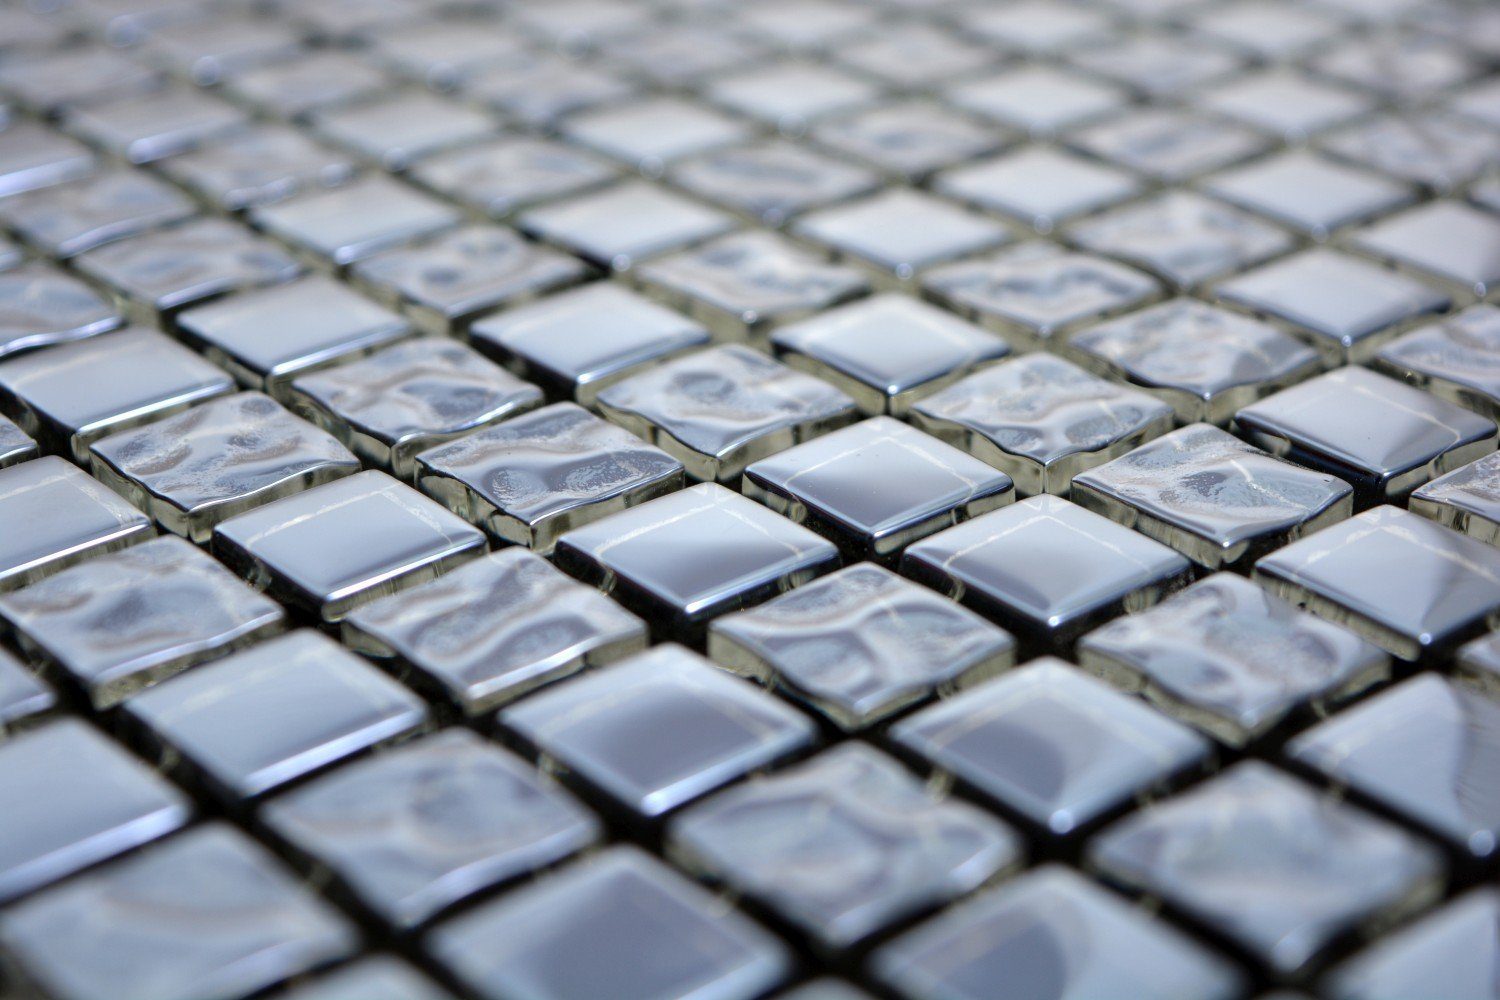 Crystal platin / Matten Mosaikfliesen glänzend Mosaikfliesen Mosani Glasmosaik 10